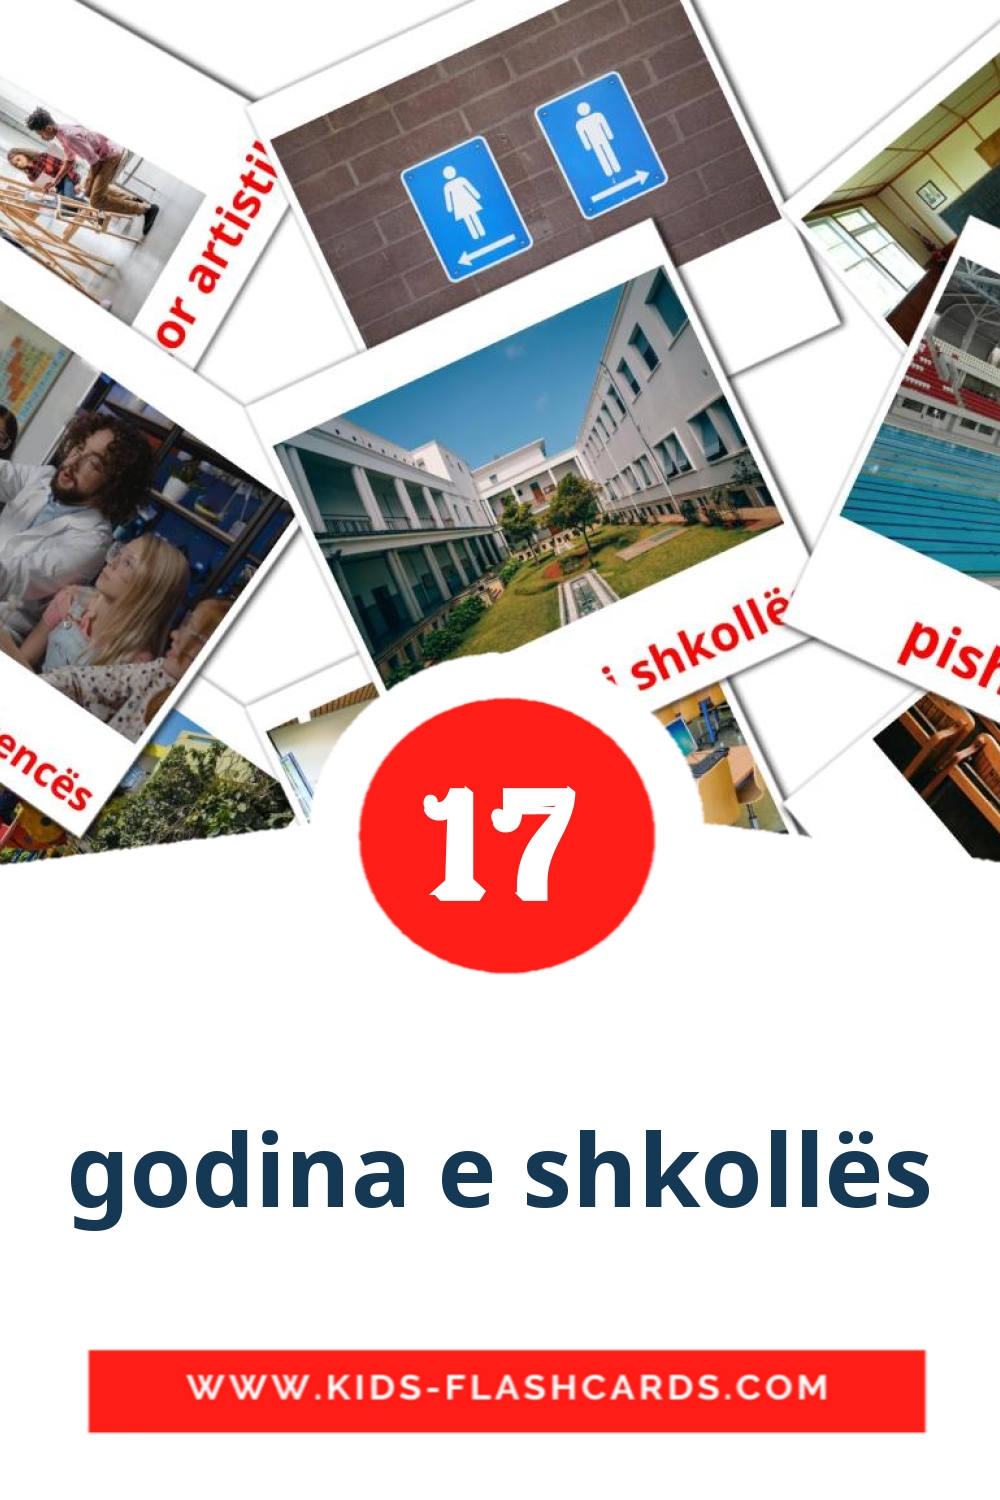 17 godina e shkollës fotokaarten voor kleuters in het albanese